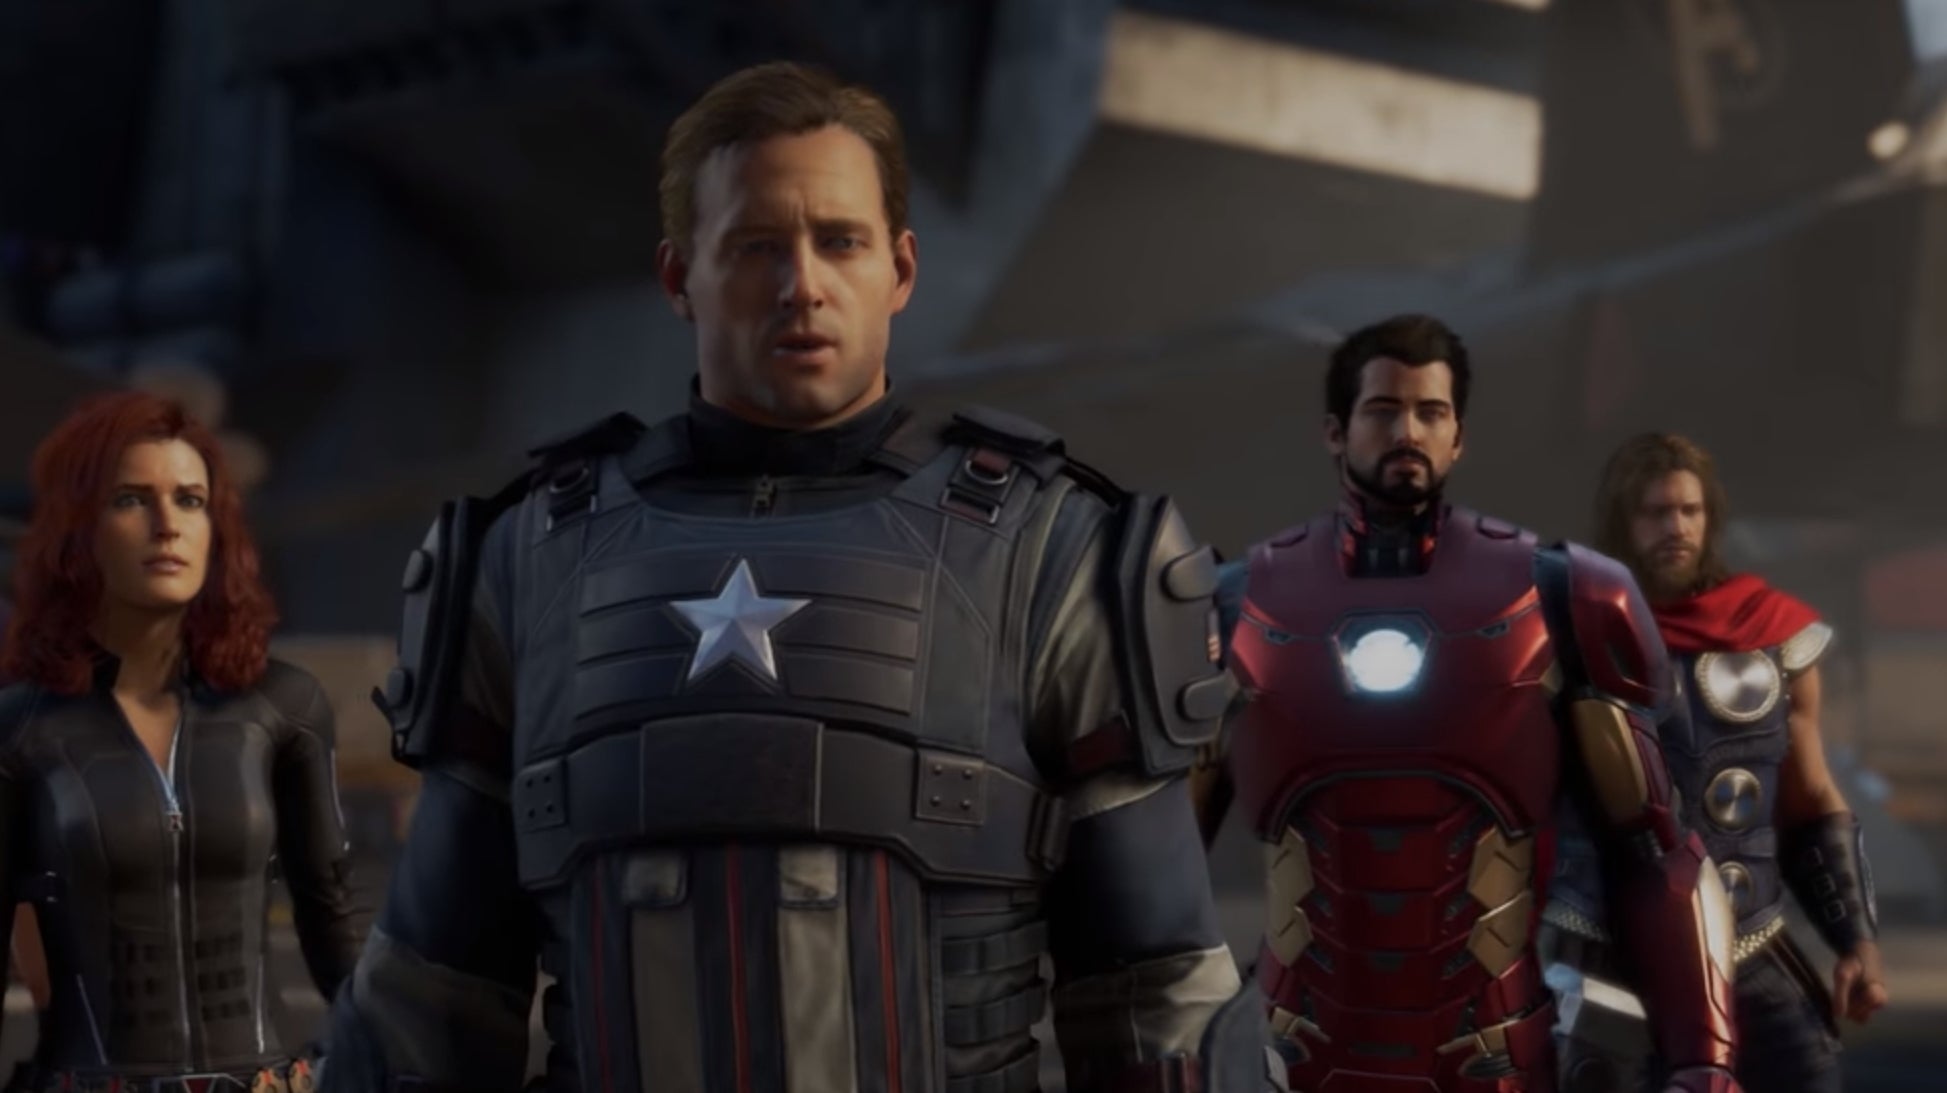 Bilder zu E3 2019 - Marvel's Avengers sieht cool aus, aber die Filme könnten ein Problem werden